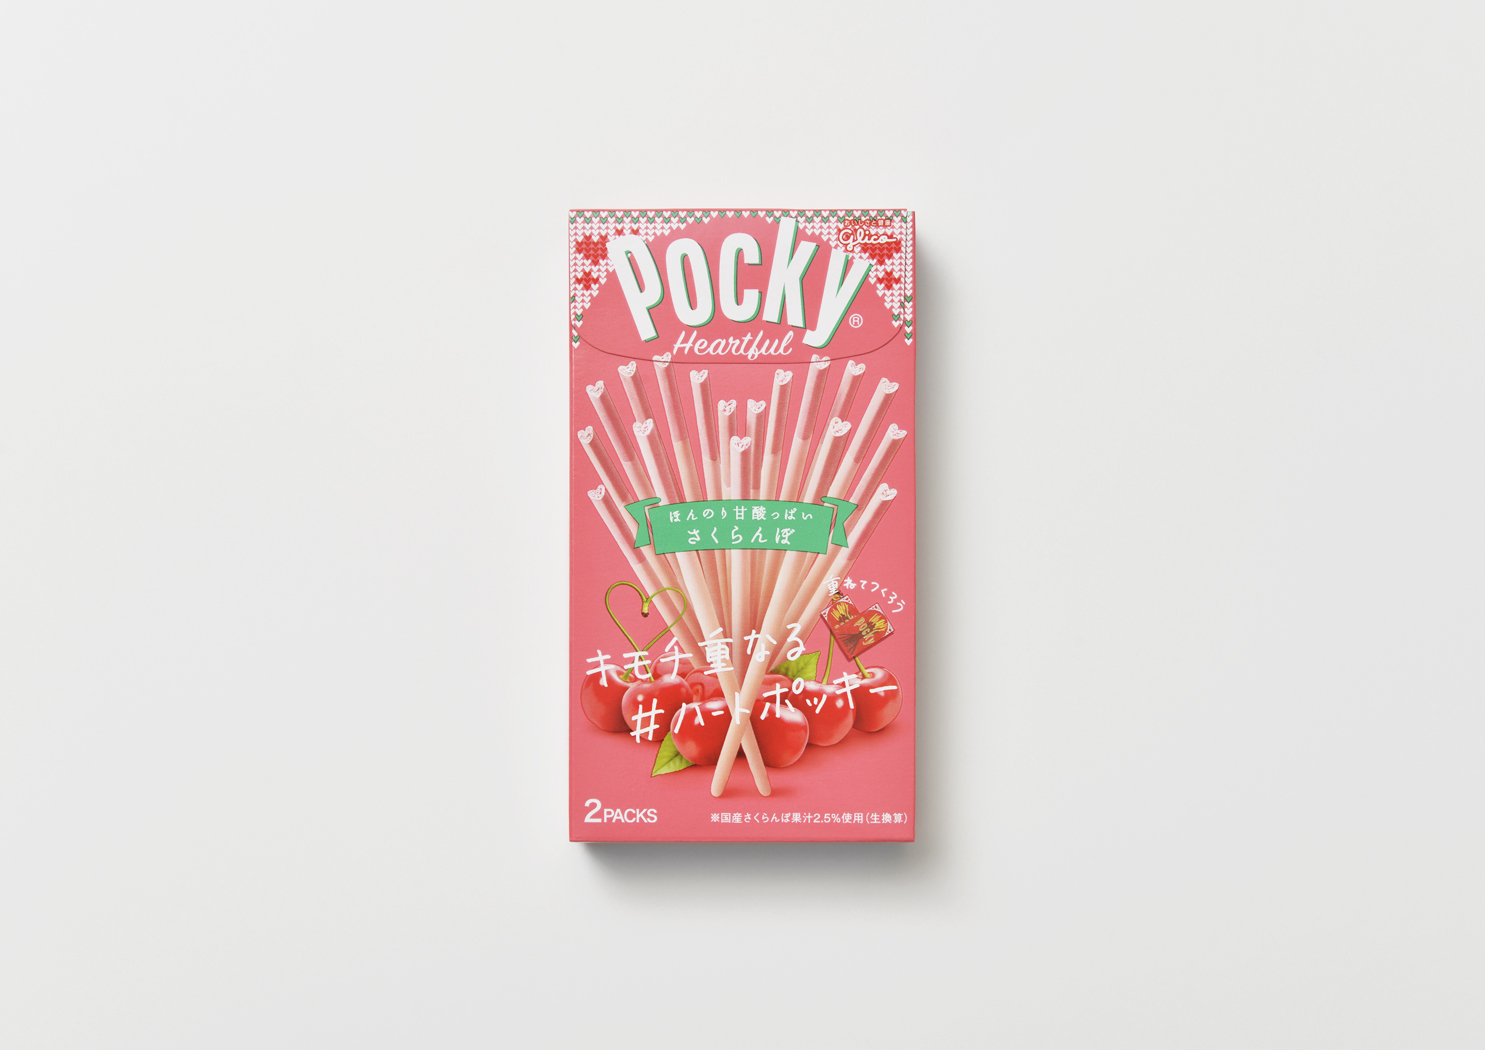 glico Pocky valentine package